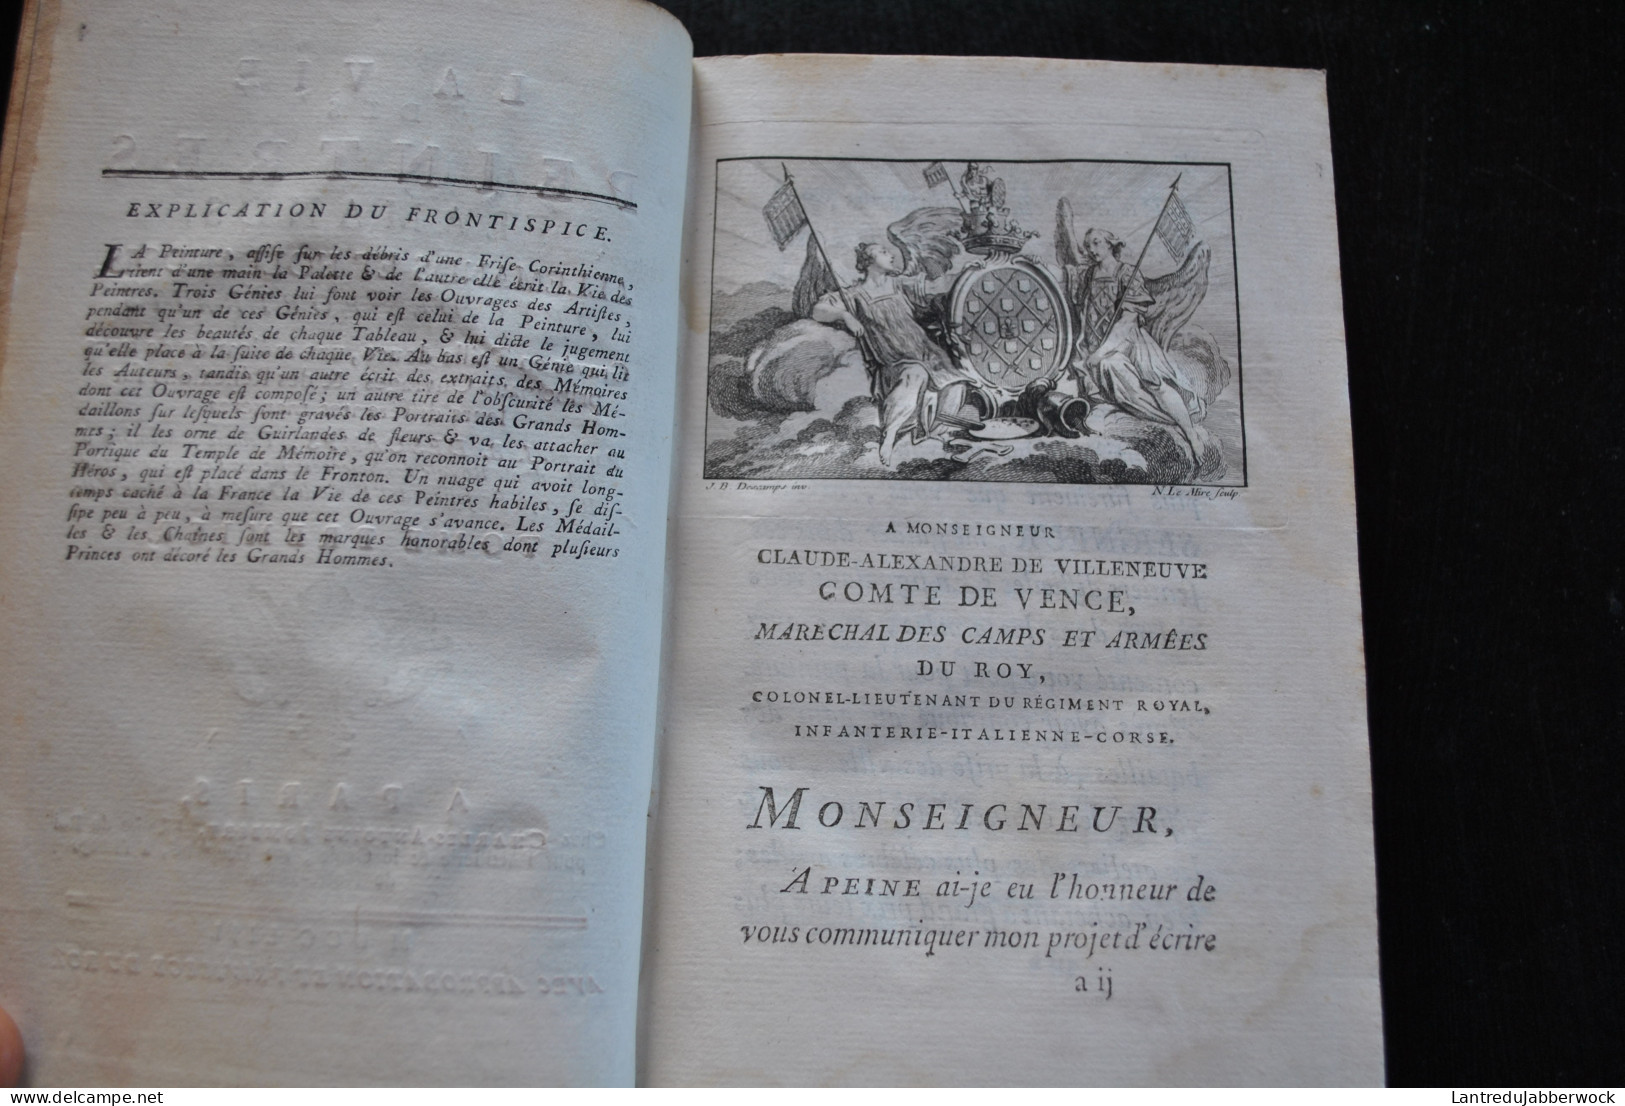 DESCAMPS Vie des Peintres Flamands Allemands et Hollandais + Voyage de la Flandre et du Brabant Complet 5 vol 1753- 1769